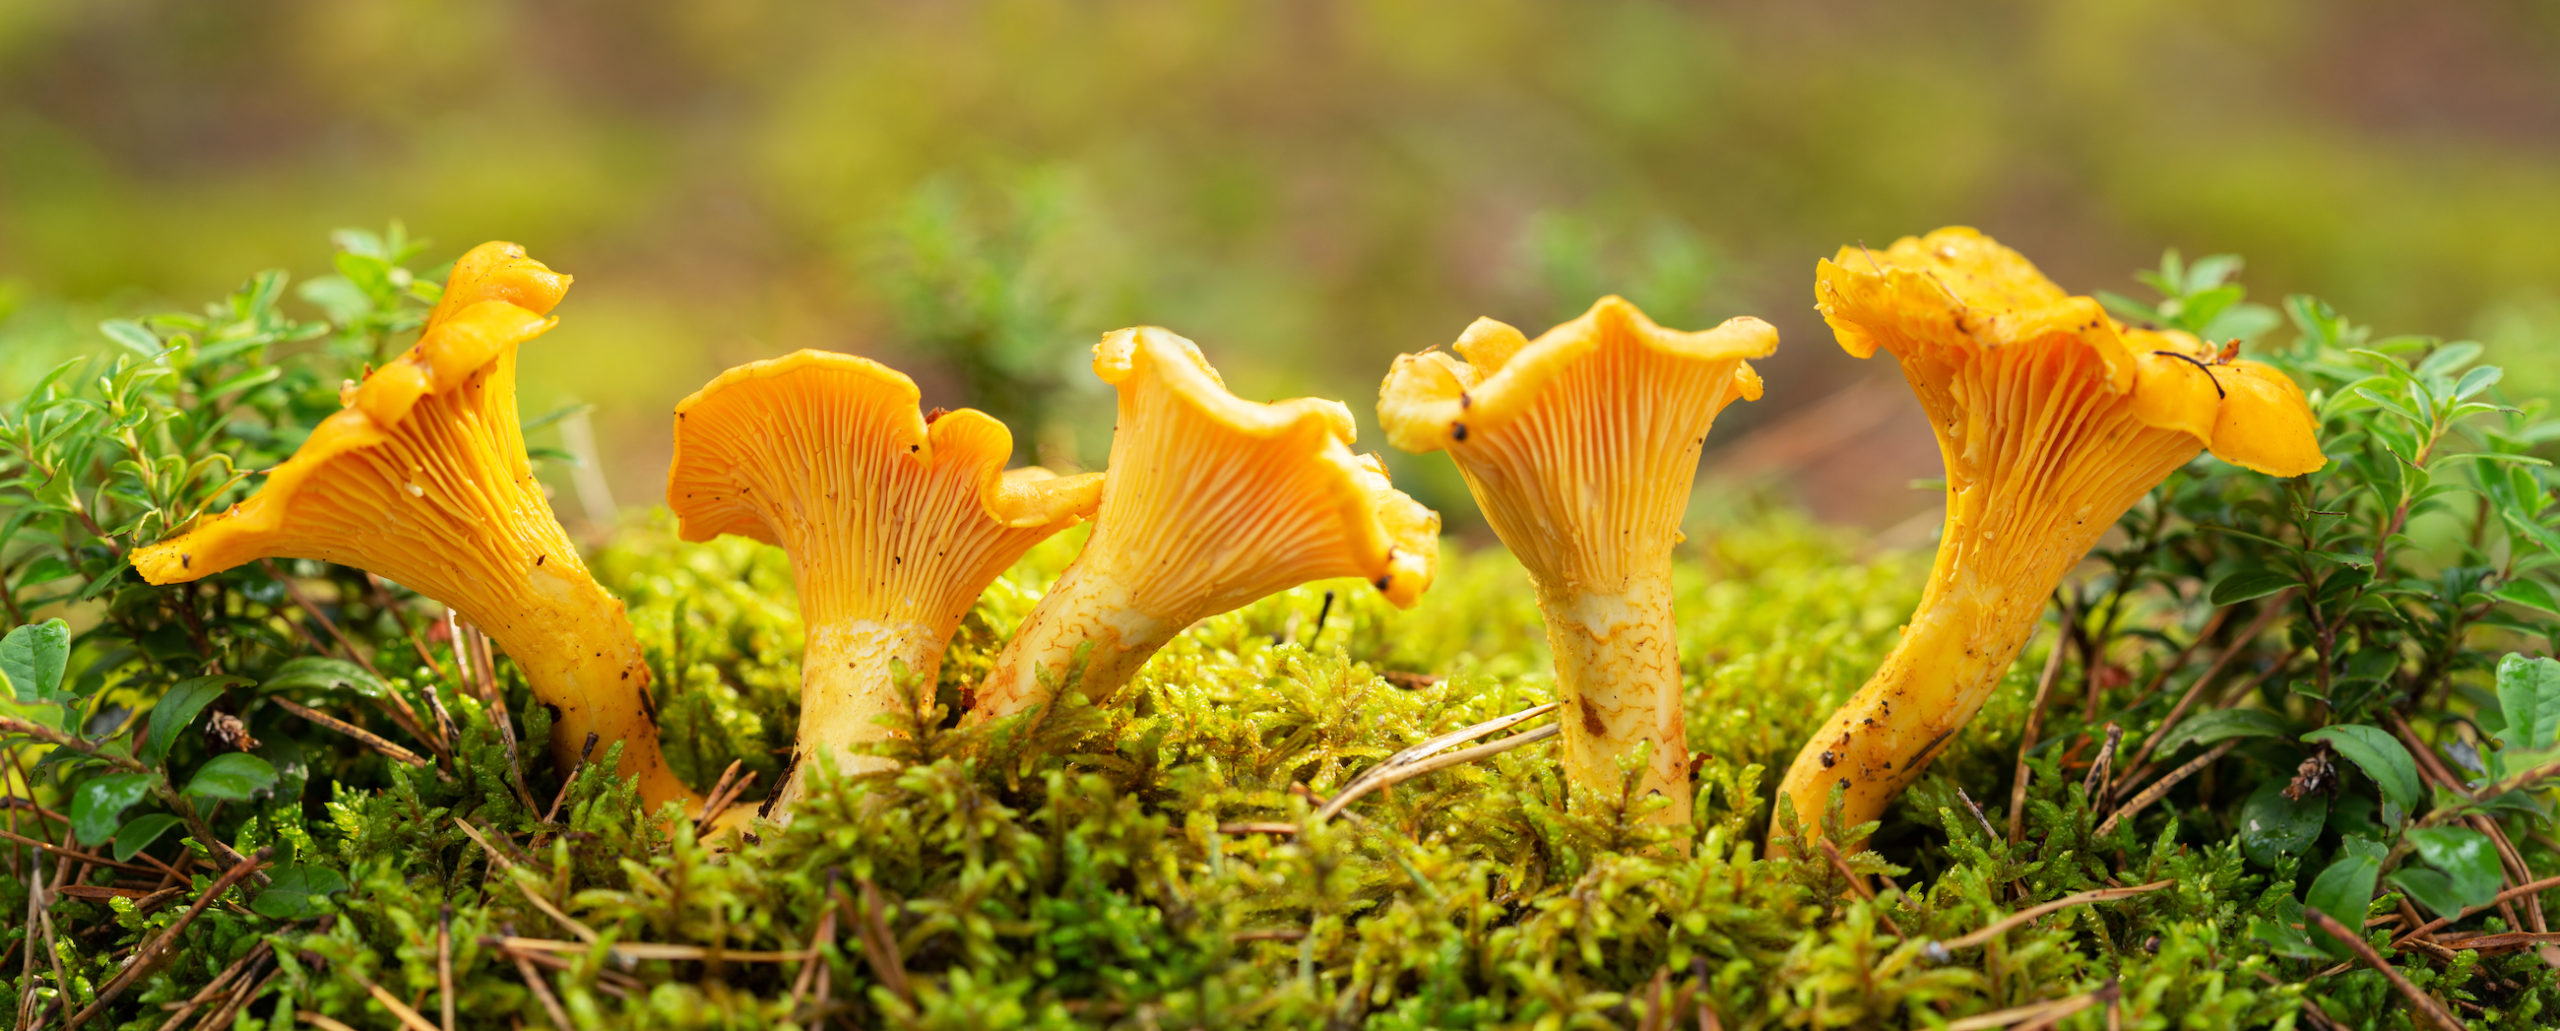 7 sientä joita on helppo kasvattaa kotona